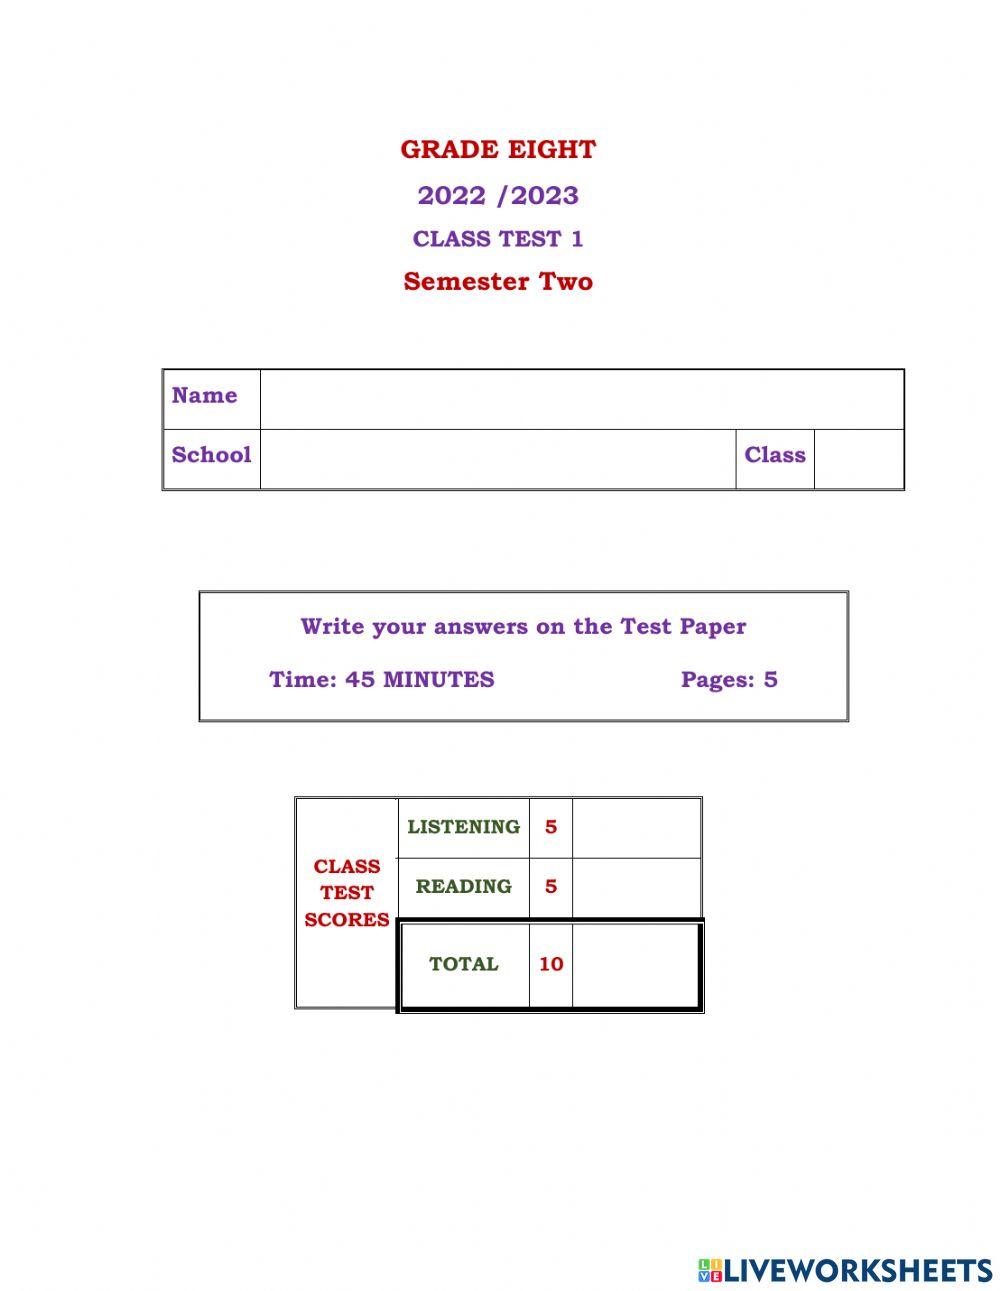 Grade 8 Class Test 1 S 2